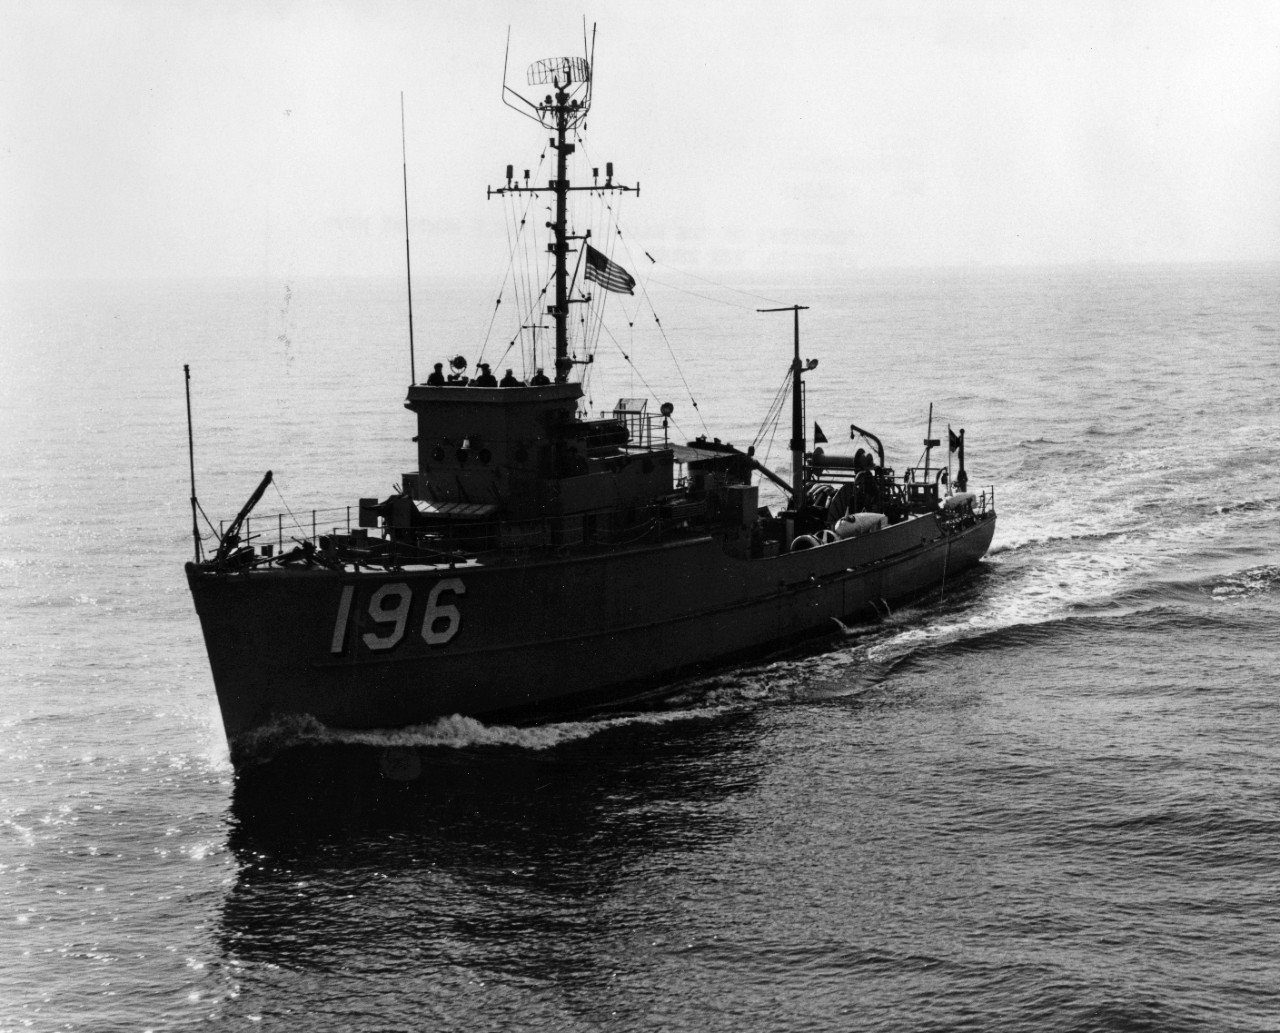 USS Meadowlark (MSC-196)